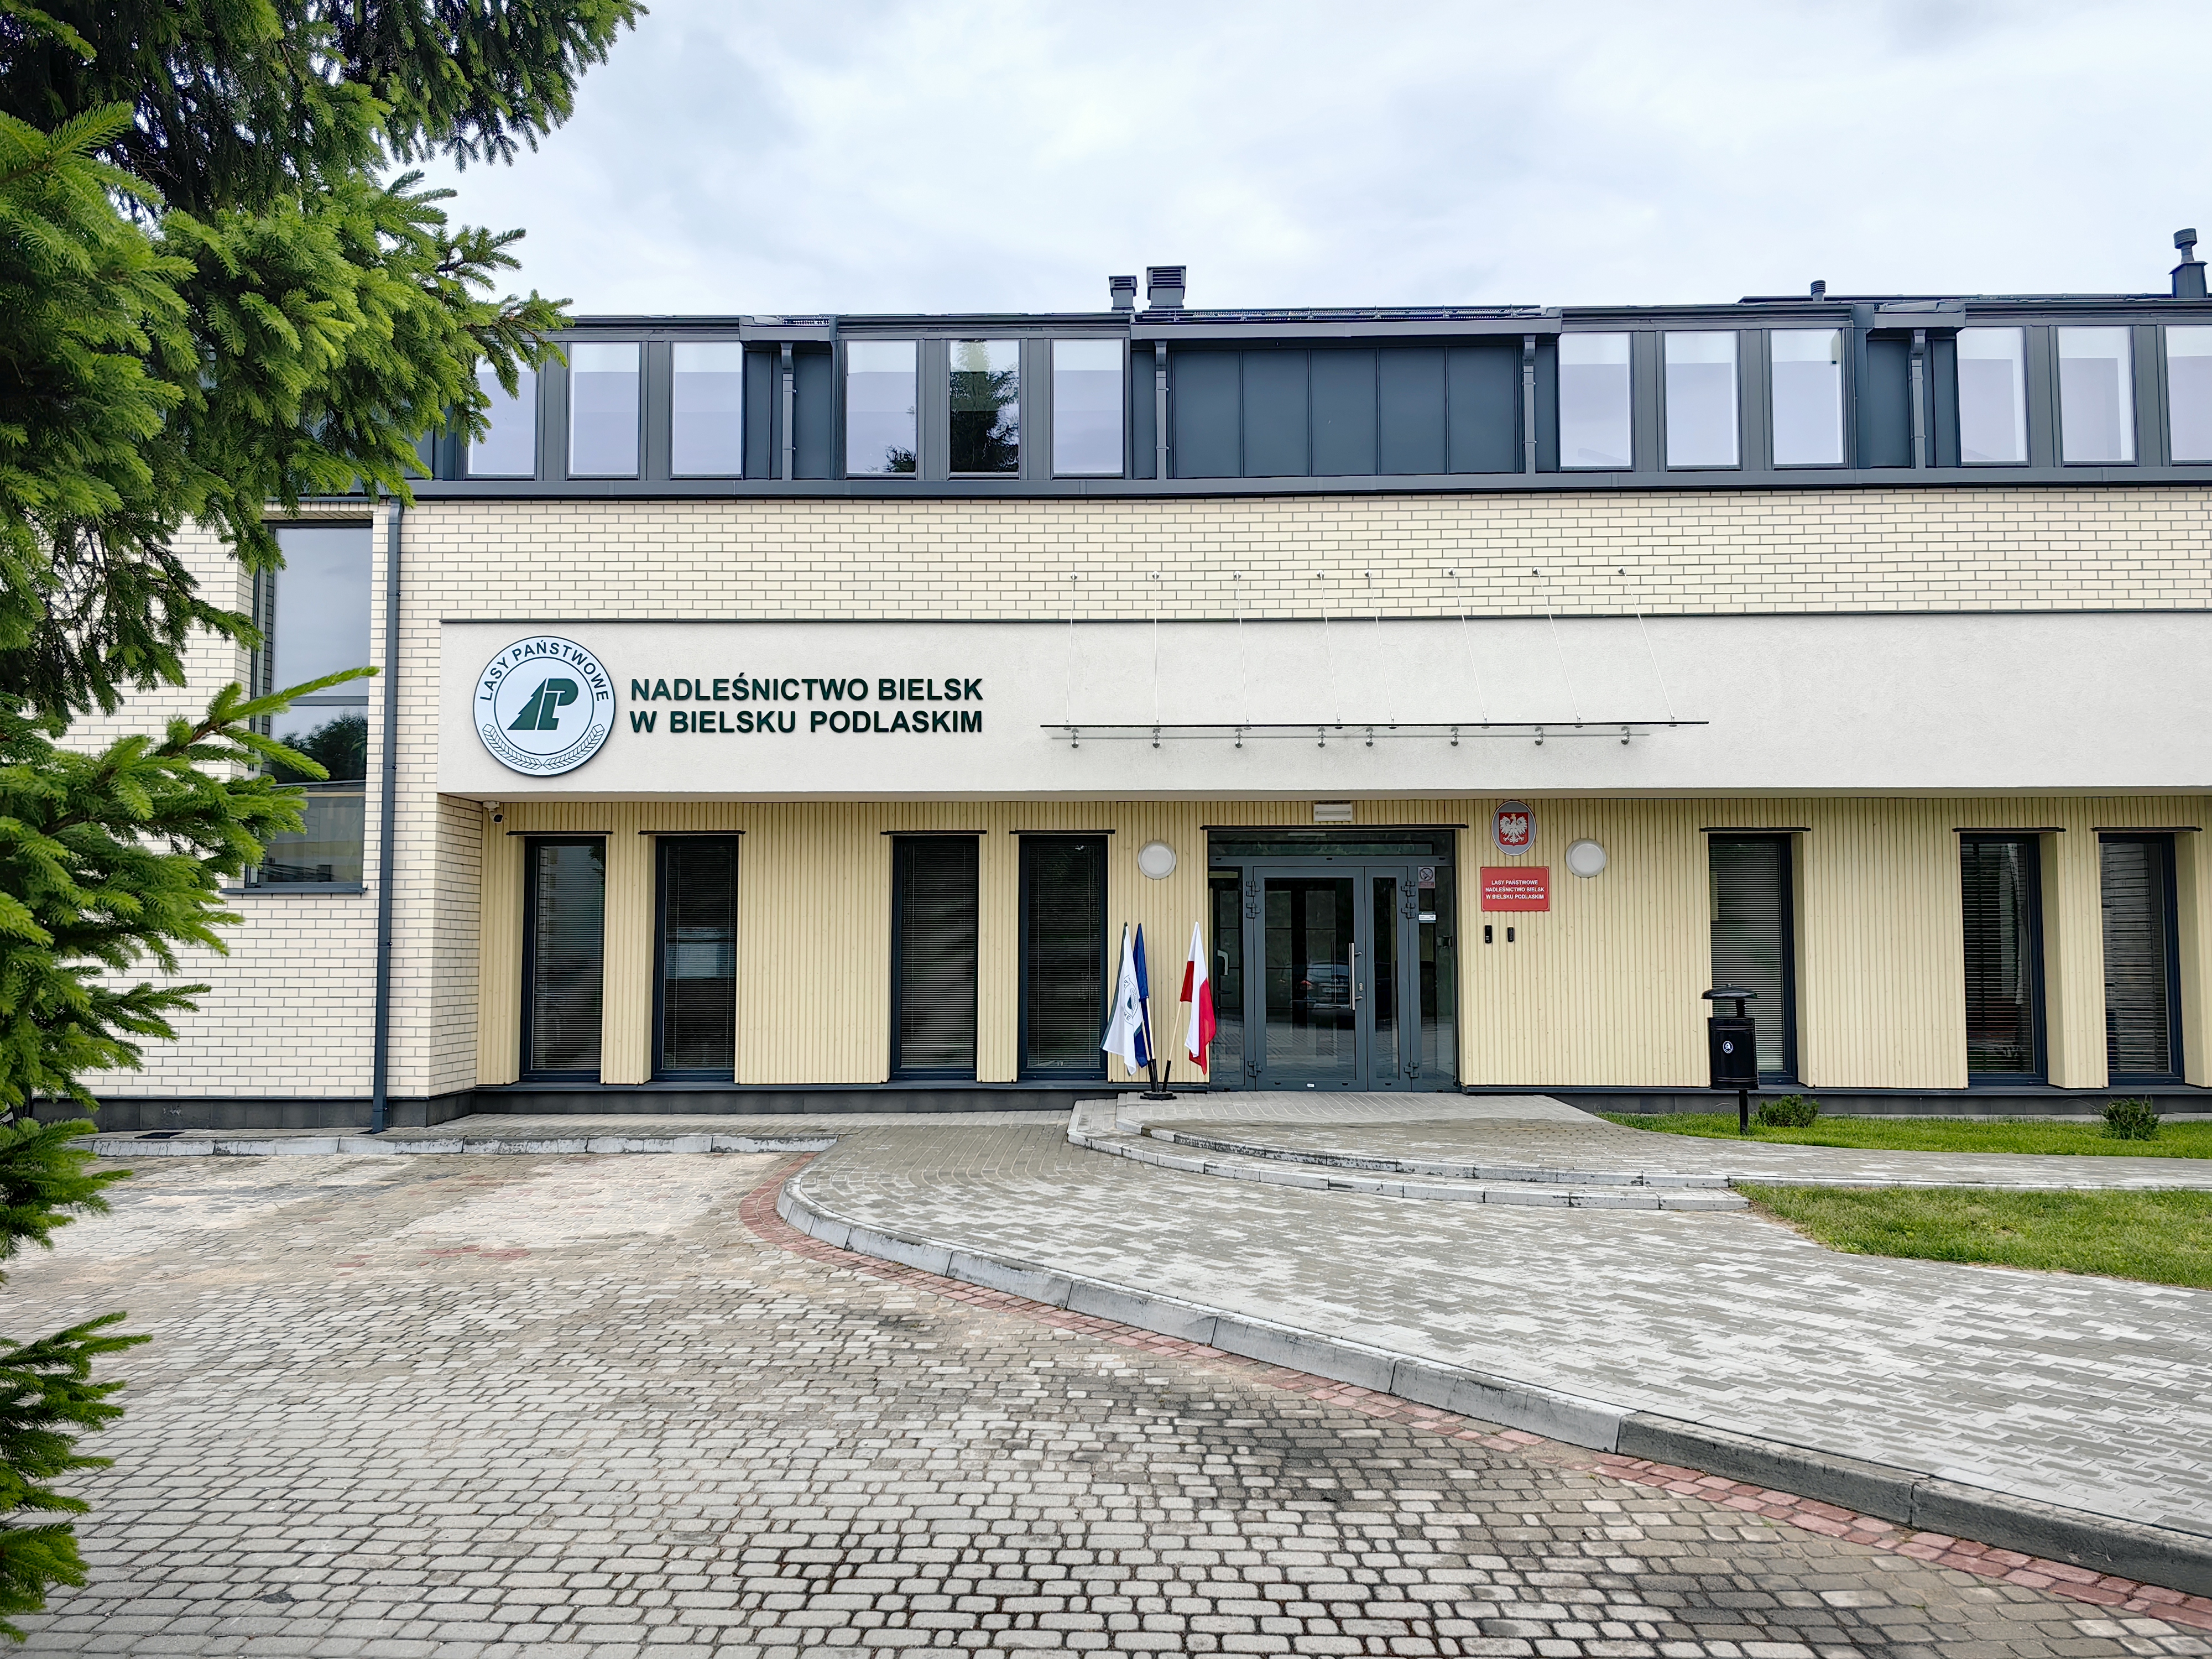 Headquarters Nadleśnictwo Bielsk w Bielsku Podlaskim